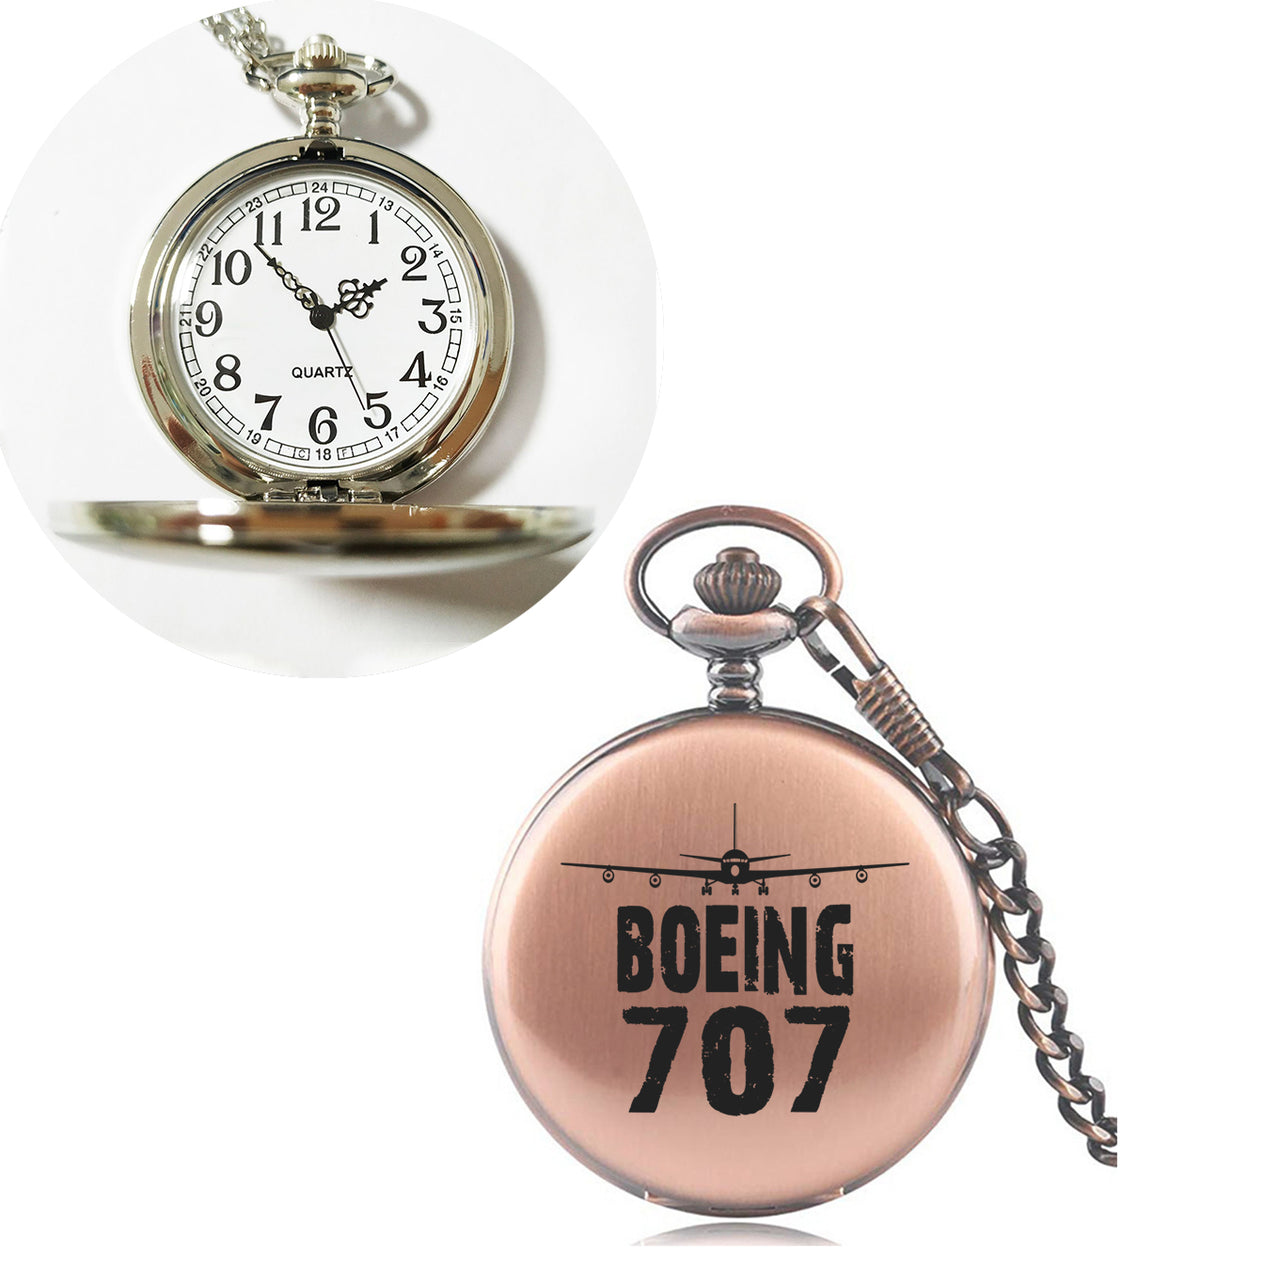 Boeing 707 & Plane Designed Pocket Watches